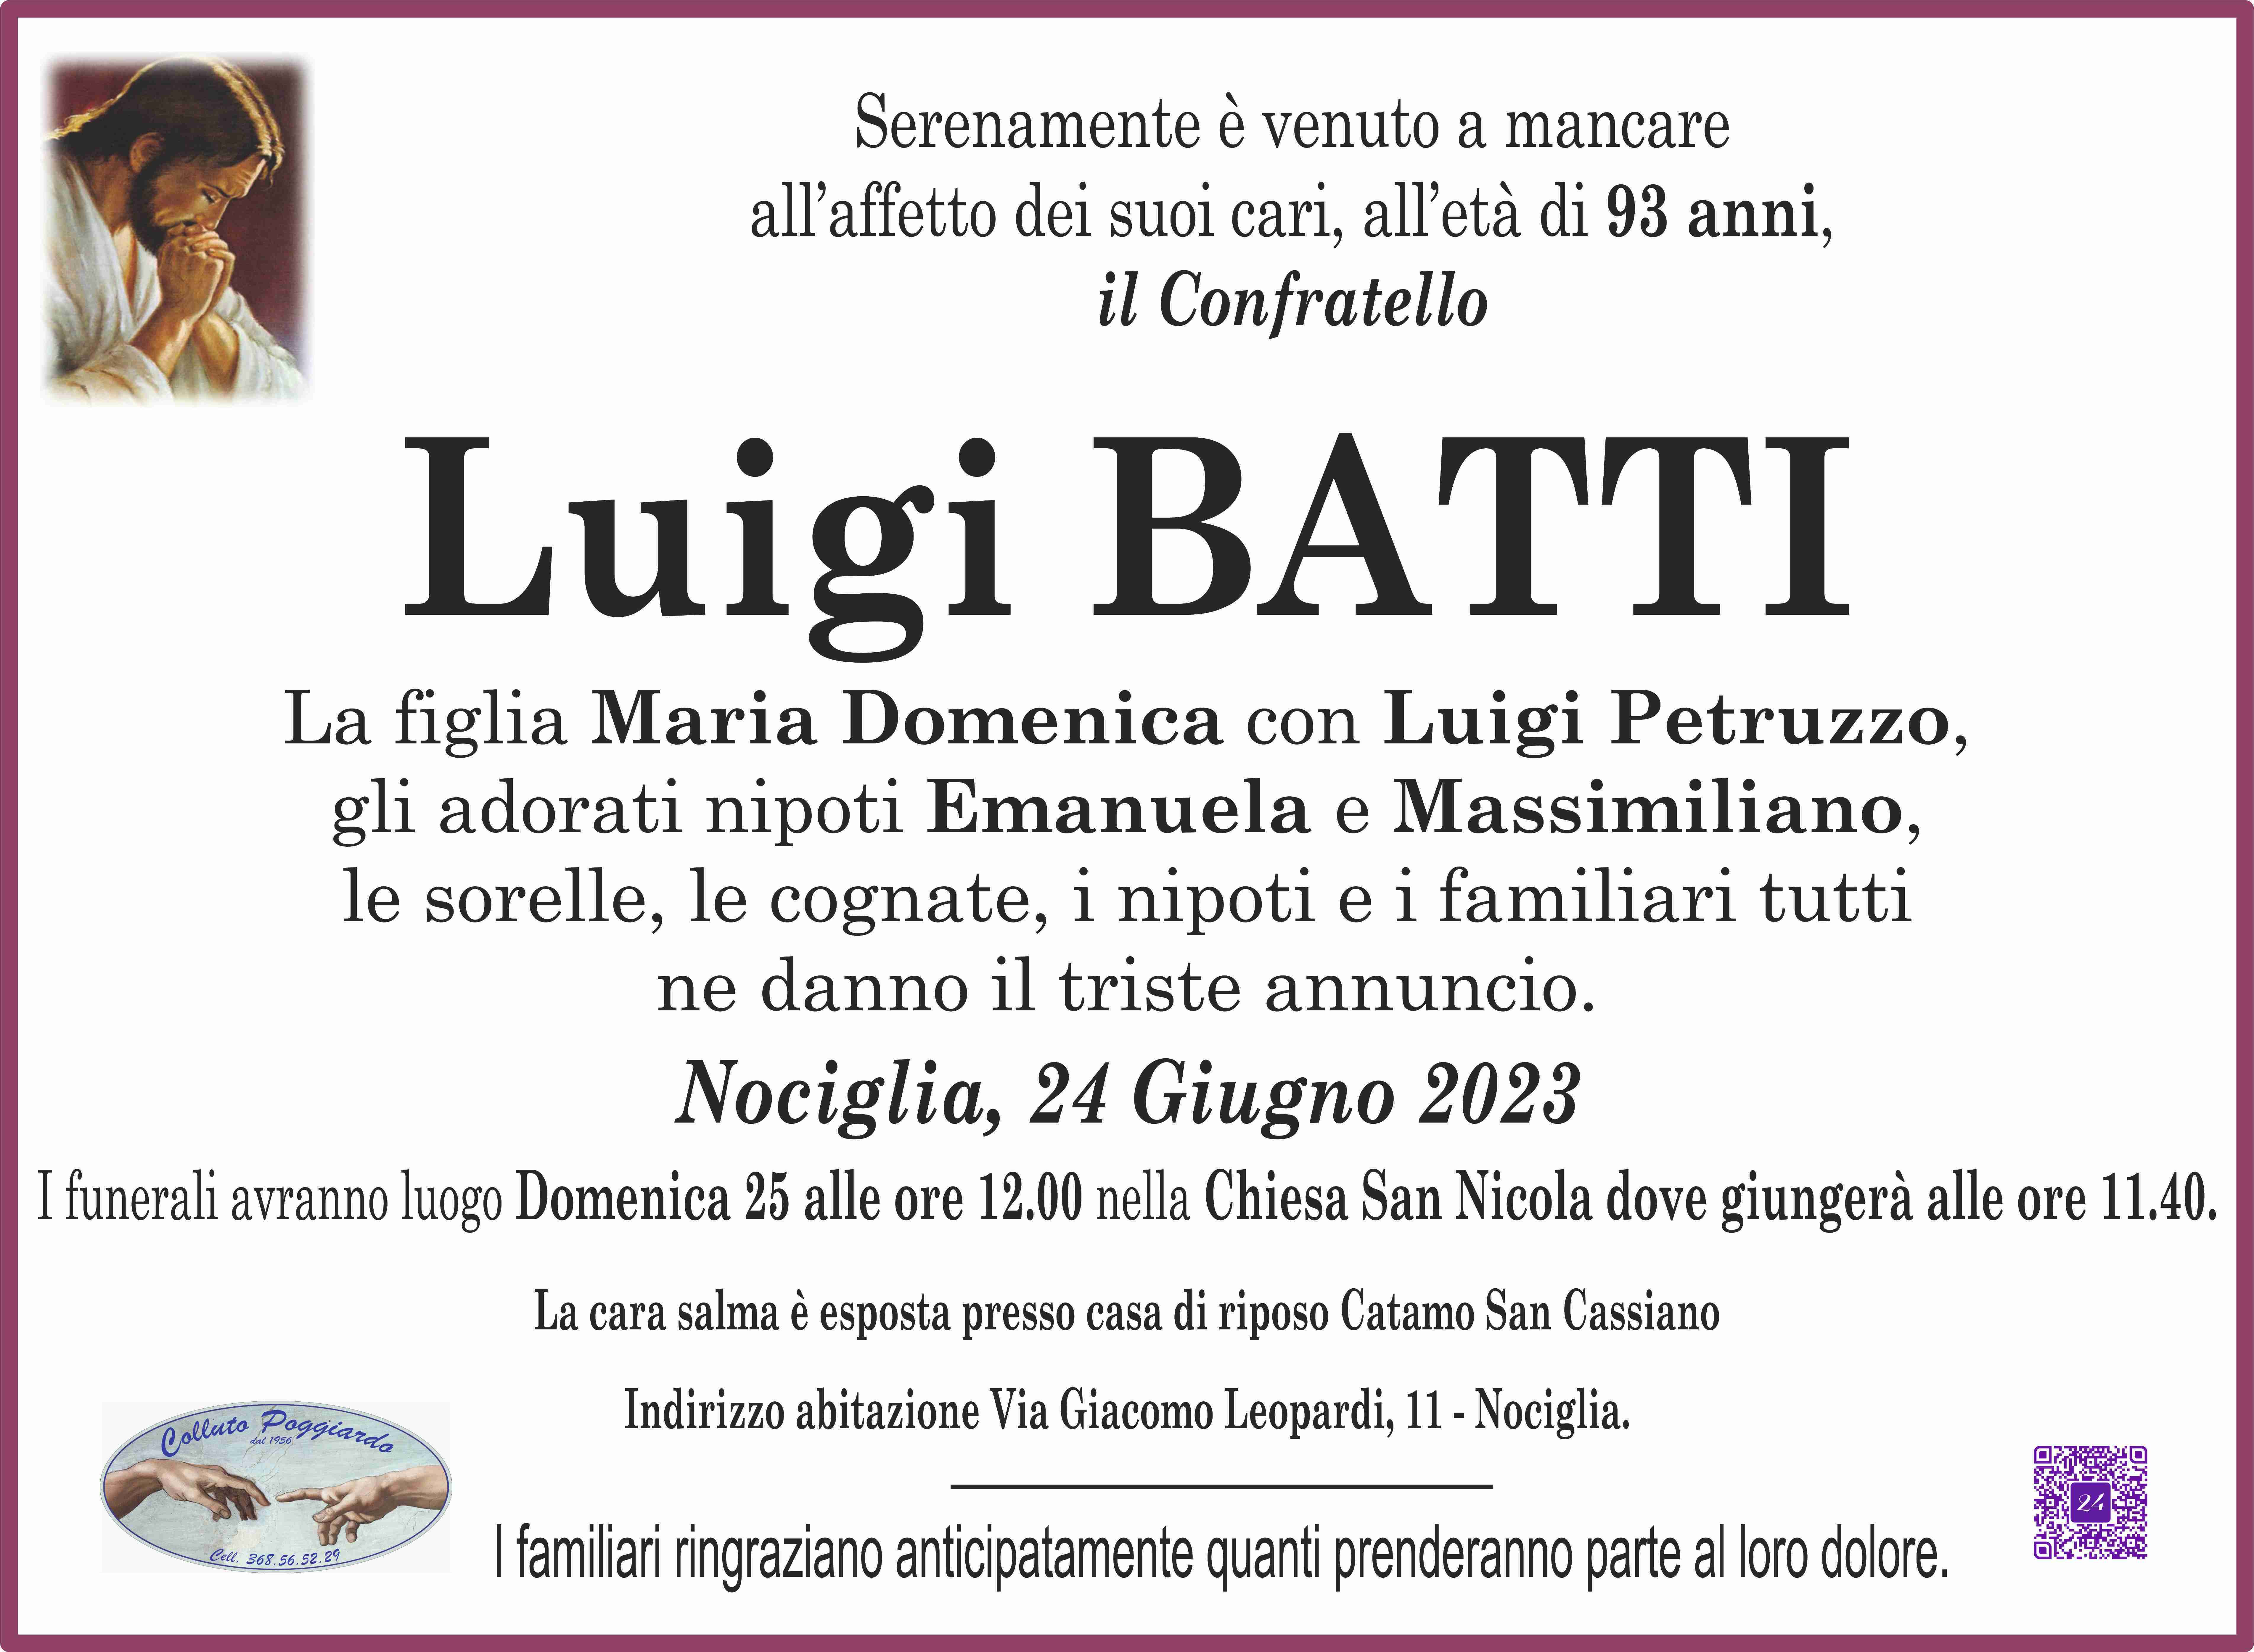 Luigi Batti